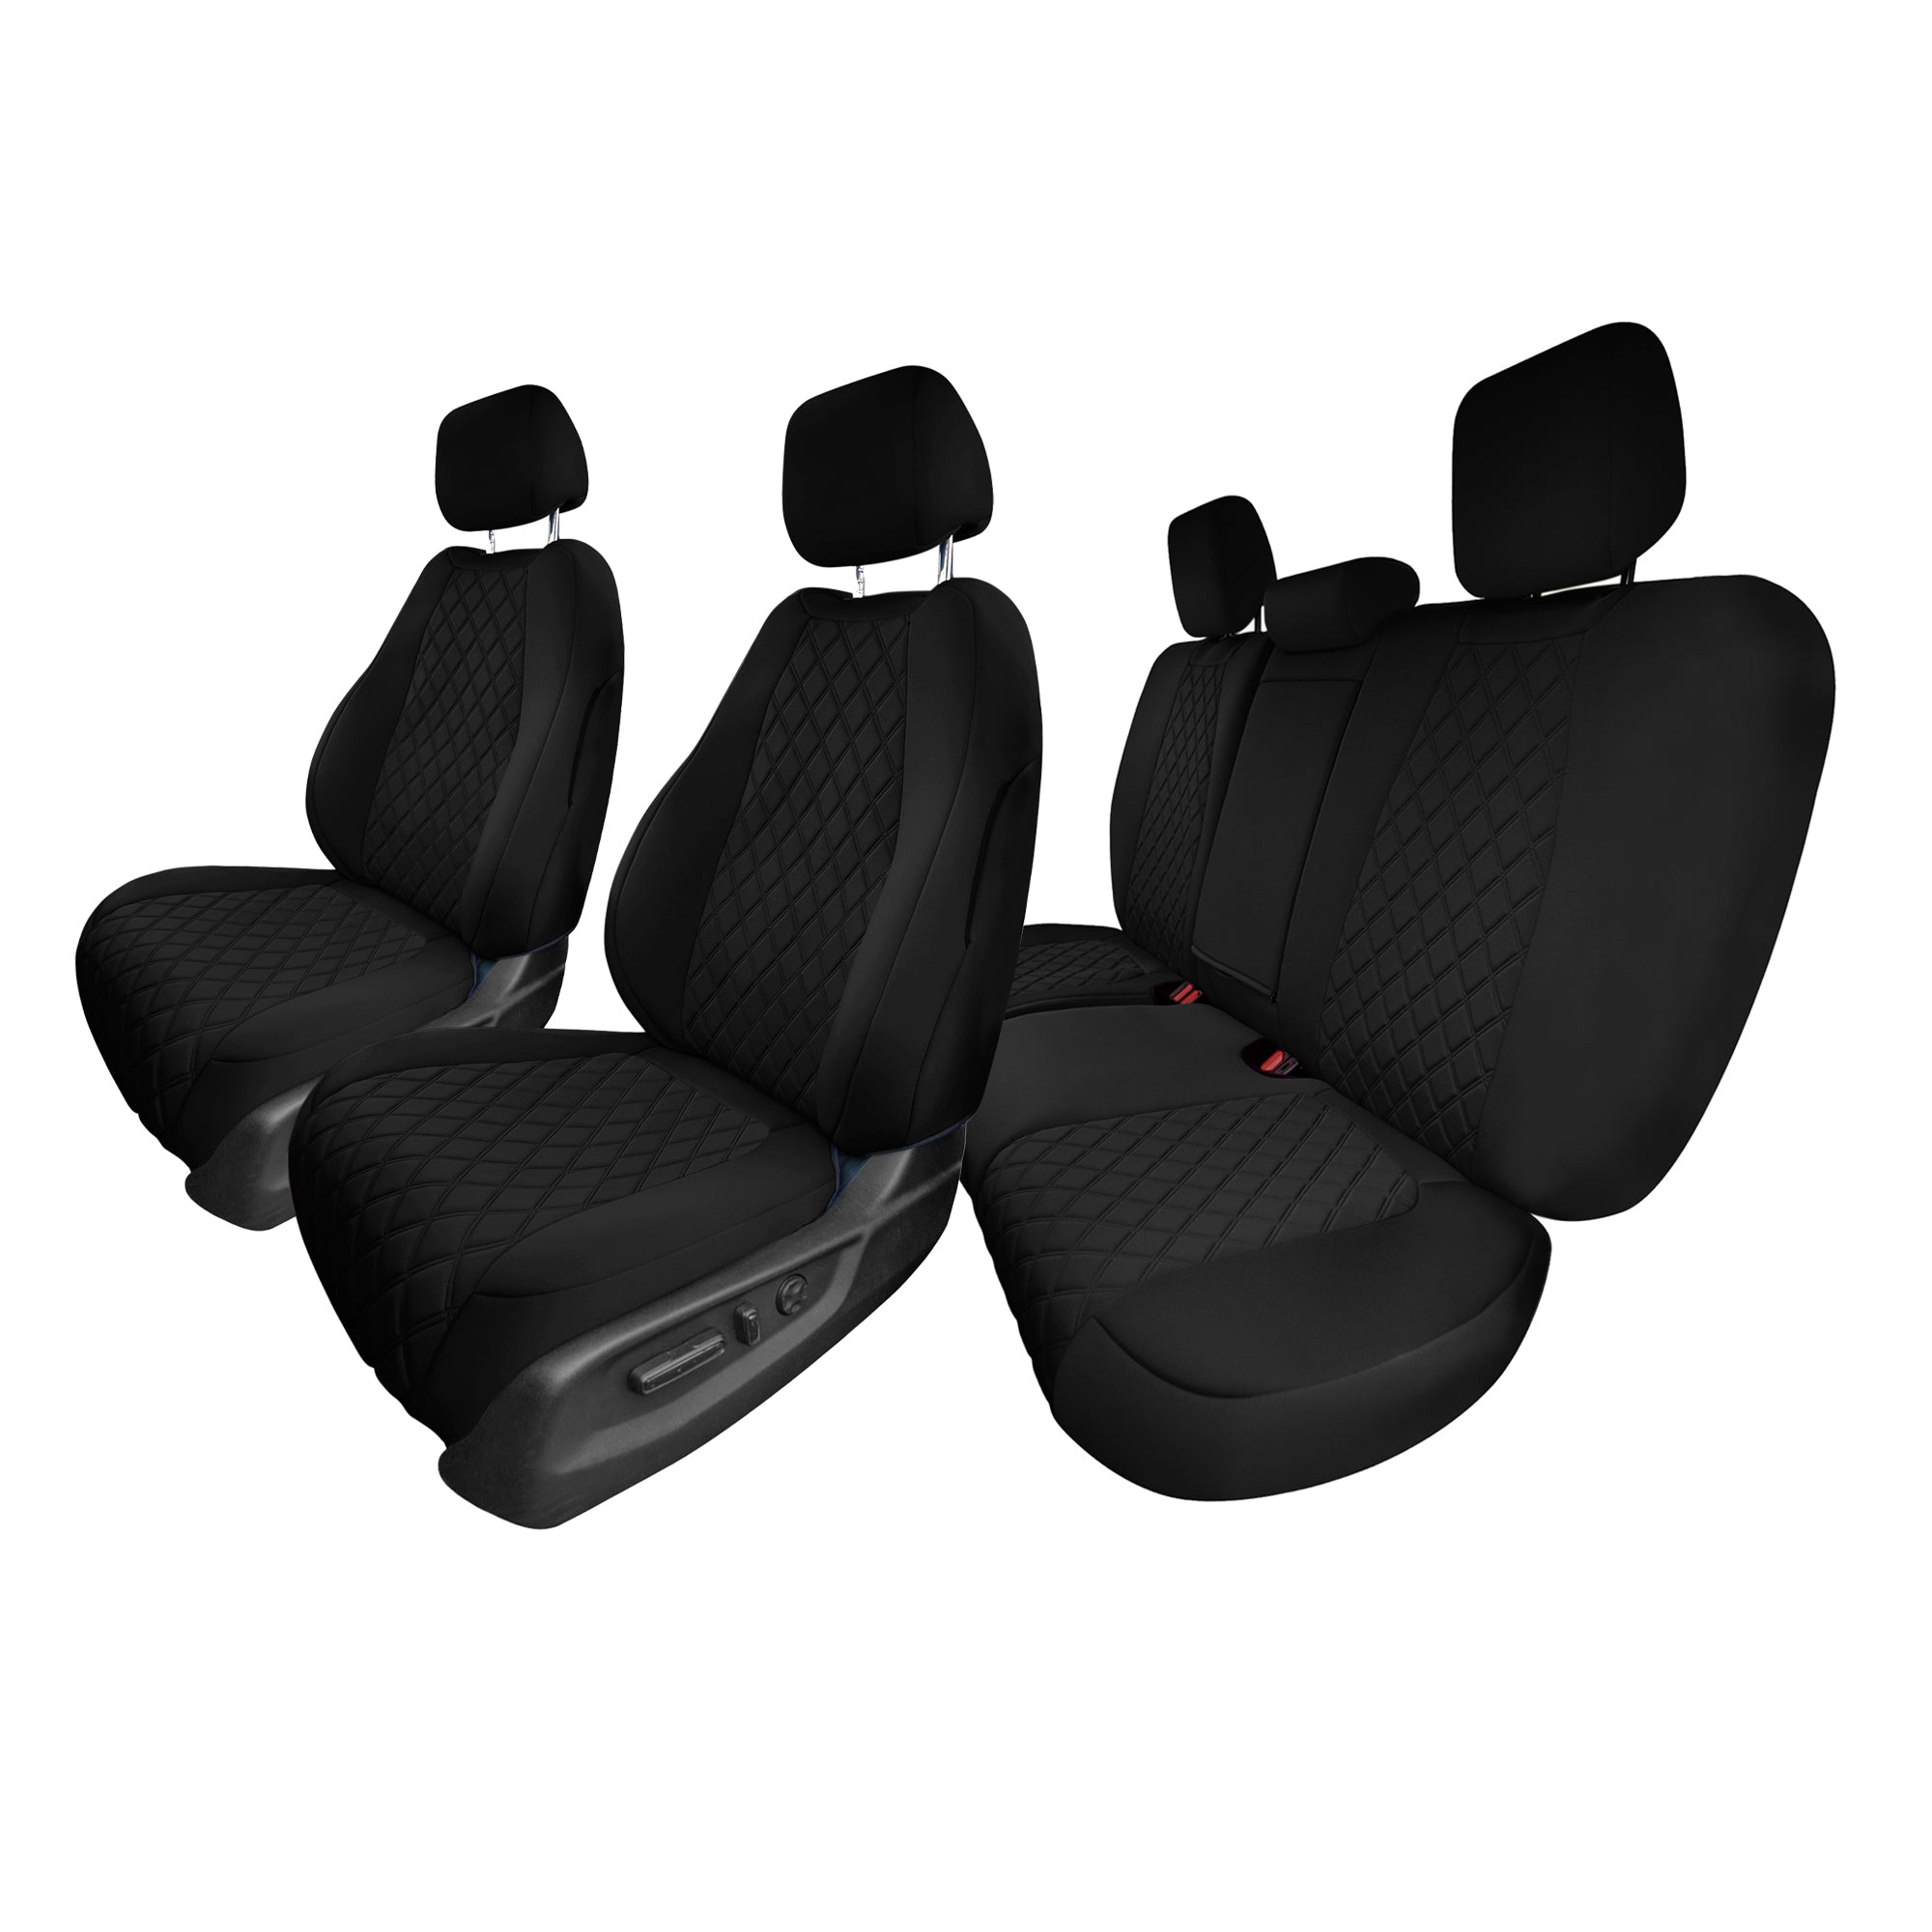 Honda CR-V 2017-2022 - Full Set Seat Covers - Black Ultraflex Neoprene